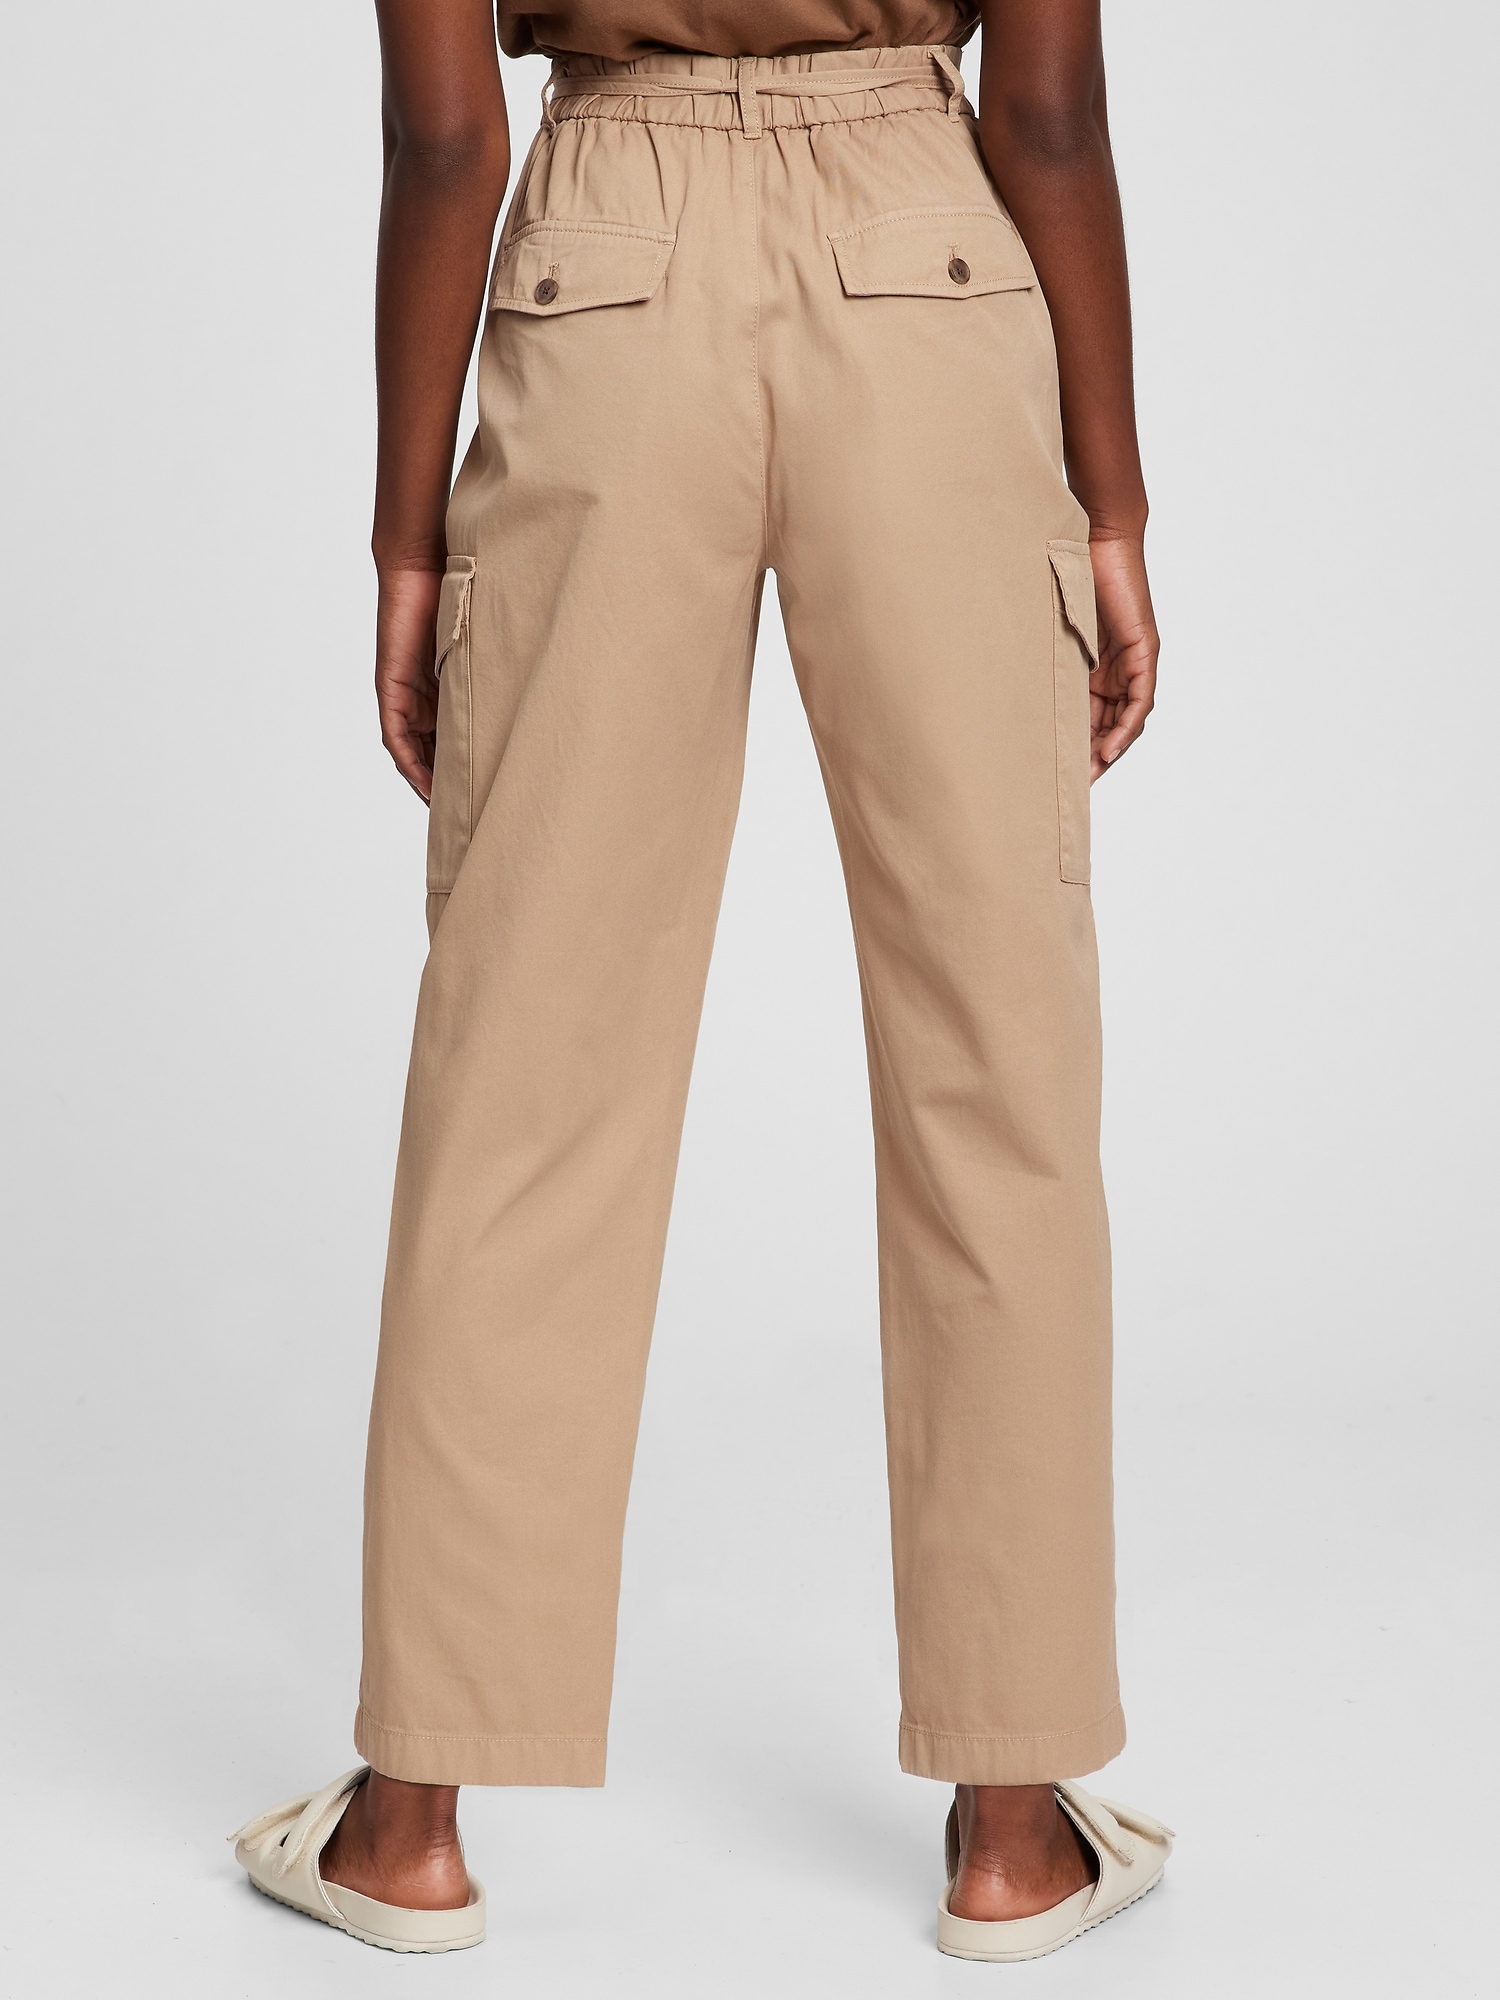 456-Gap tan pants size 8R Gap tan pants size 8R 16 inches waist